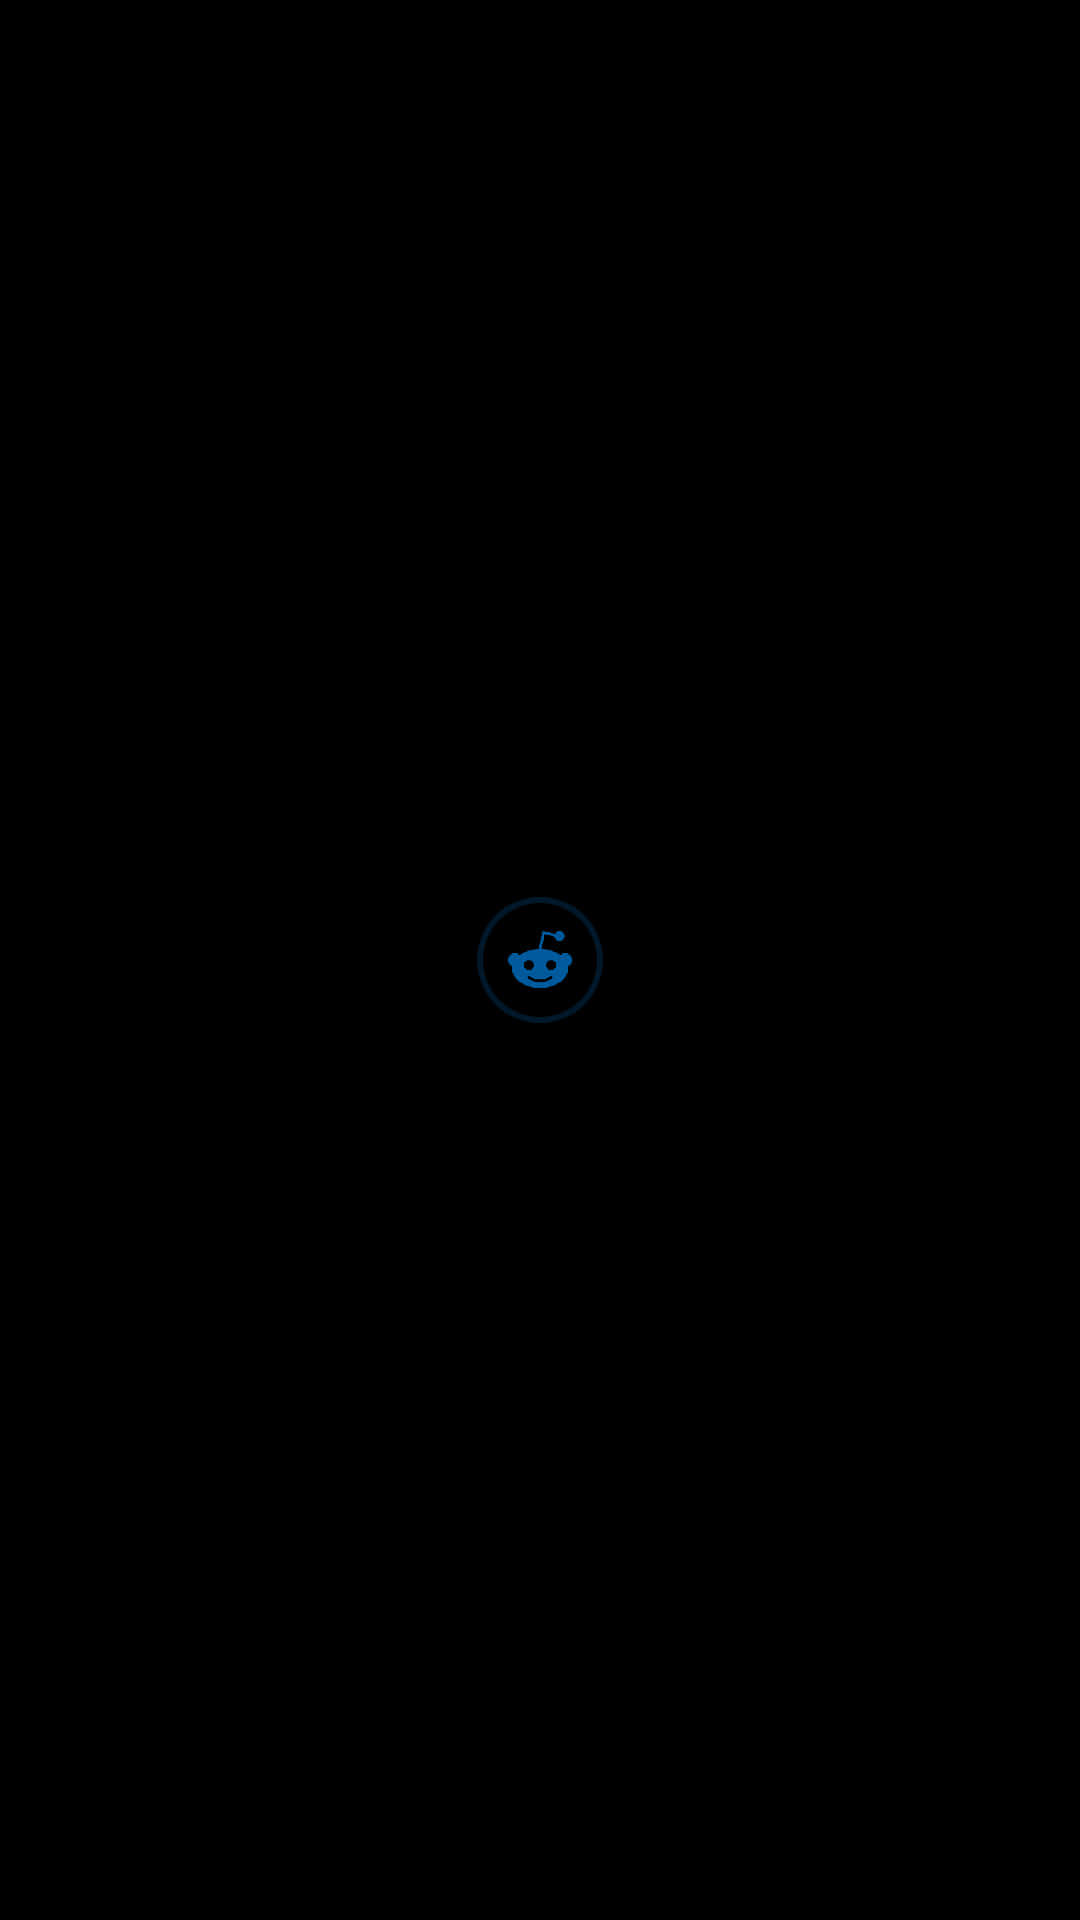 Amoledbaggrund, Blå Reddit-logo.